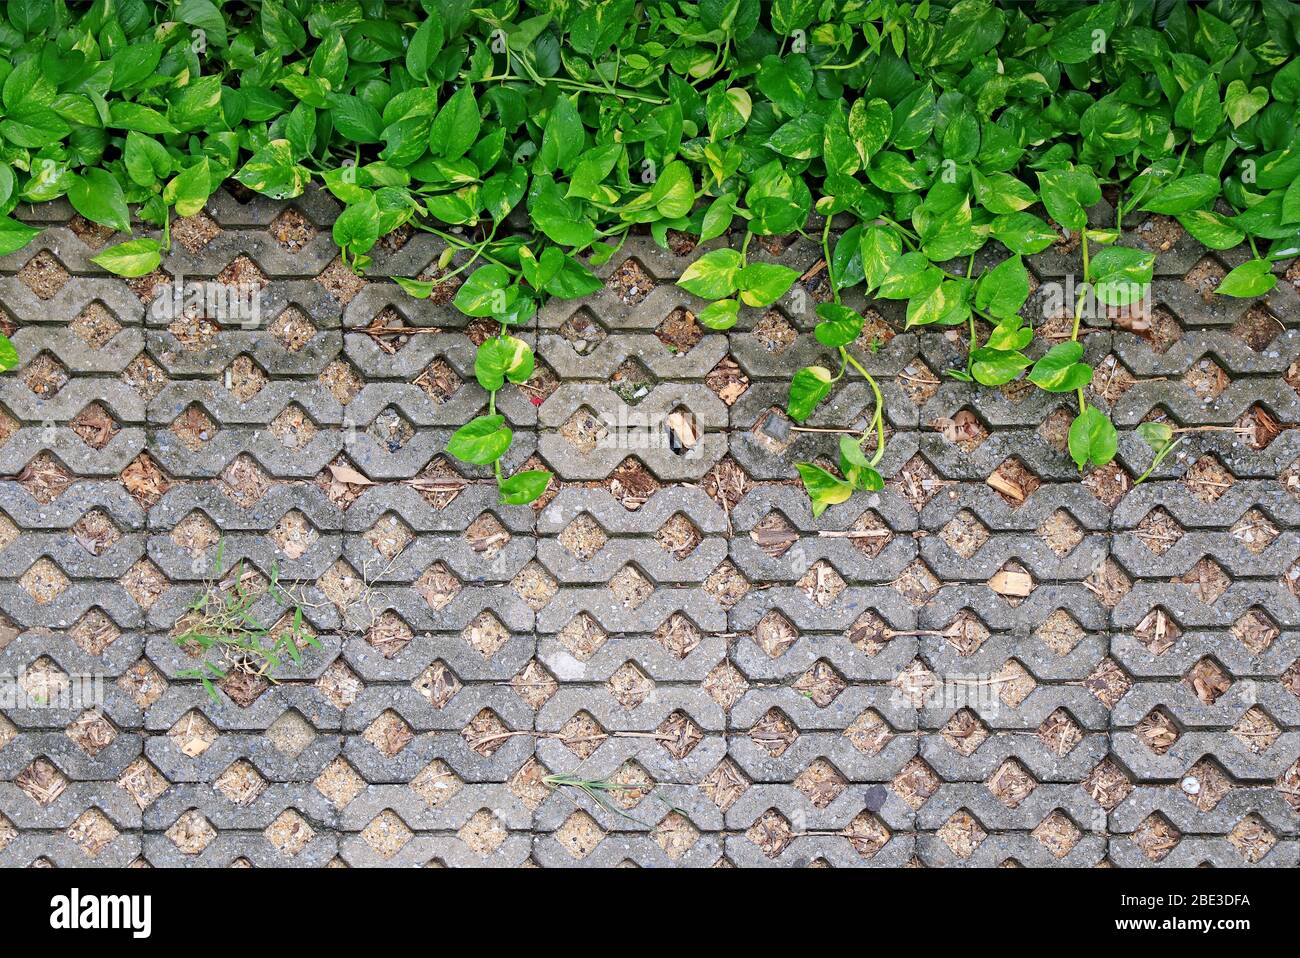 Green Devil's Ivy piante con gocce d'acqua su falde in cemento Foto Stock